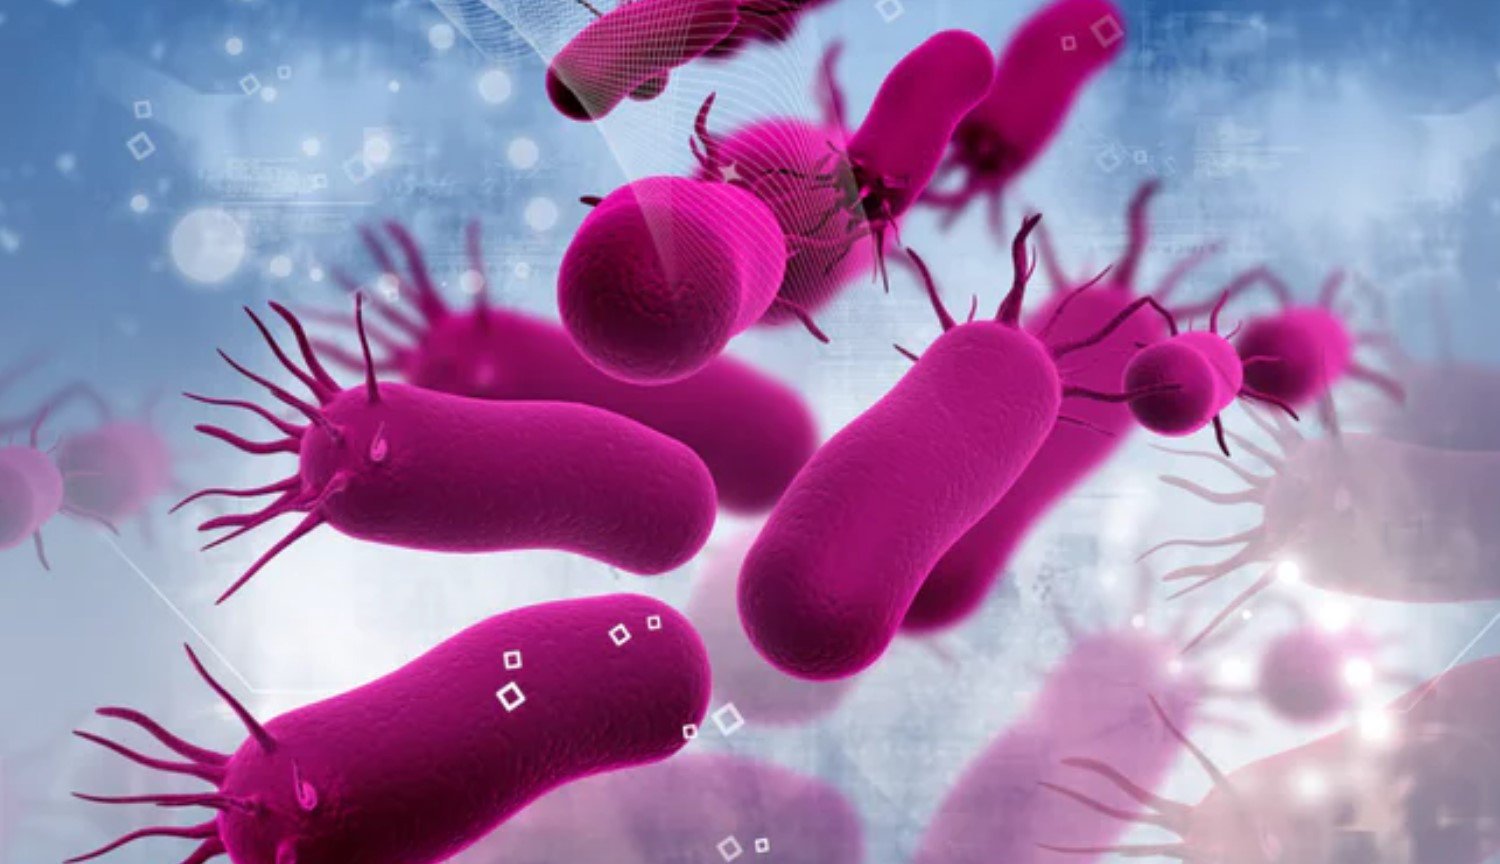 ज़ोंबी मोड: वैज्ञानिकों की खोज की है एक नए राज्य के बैक्टीरिया